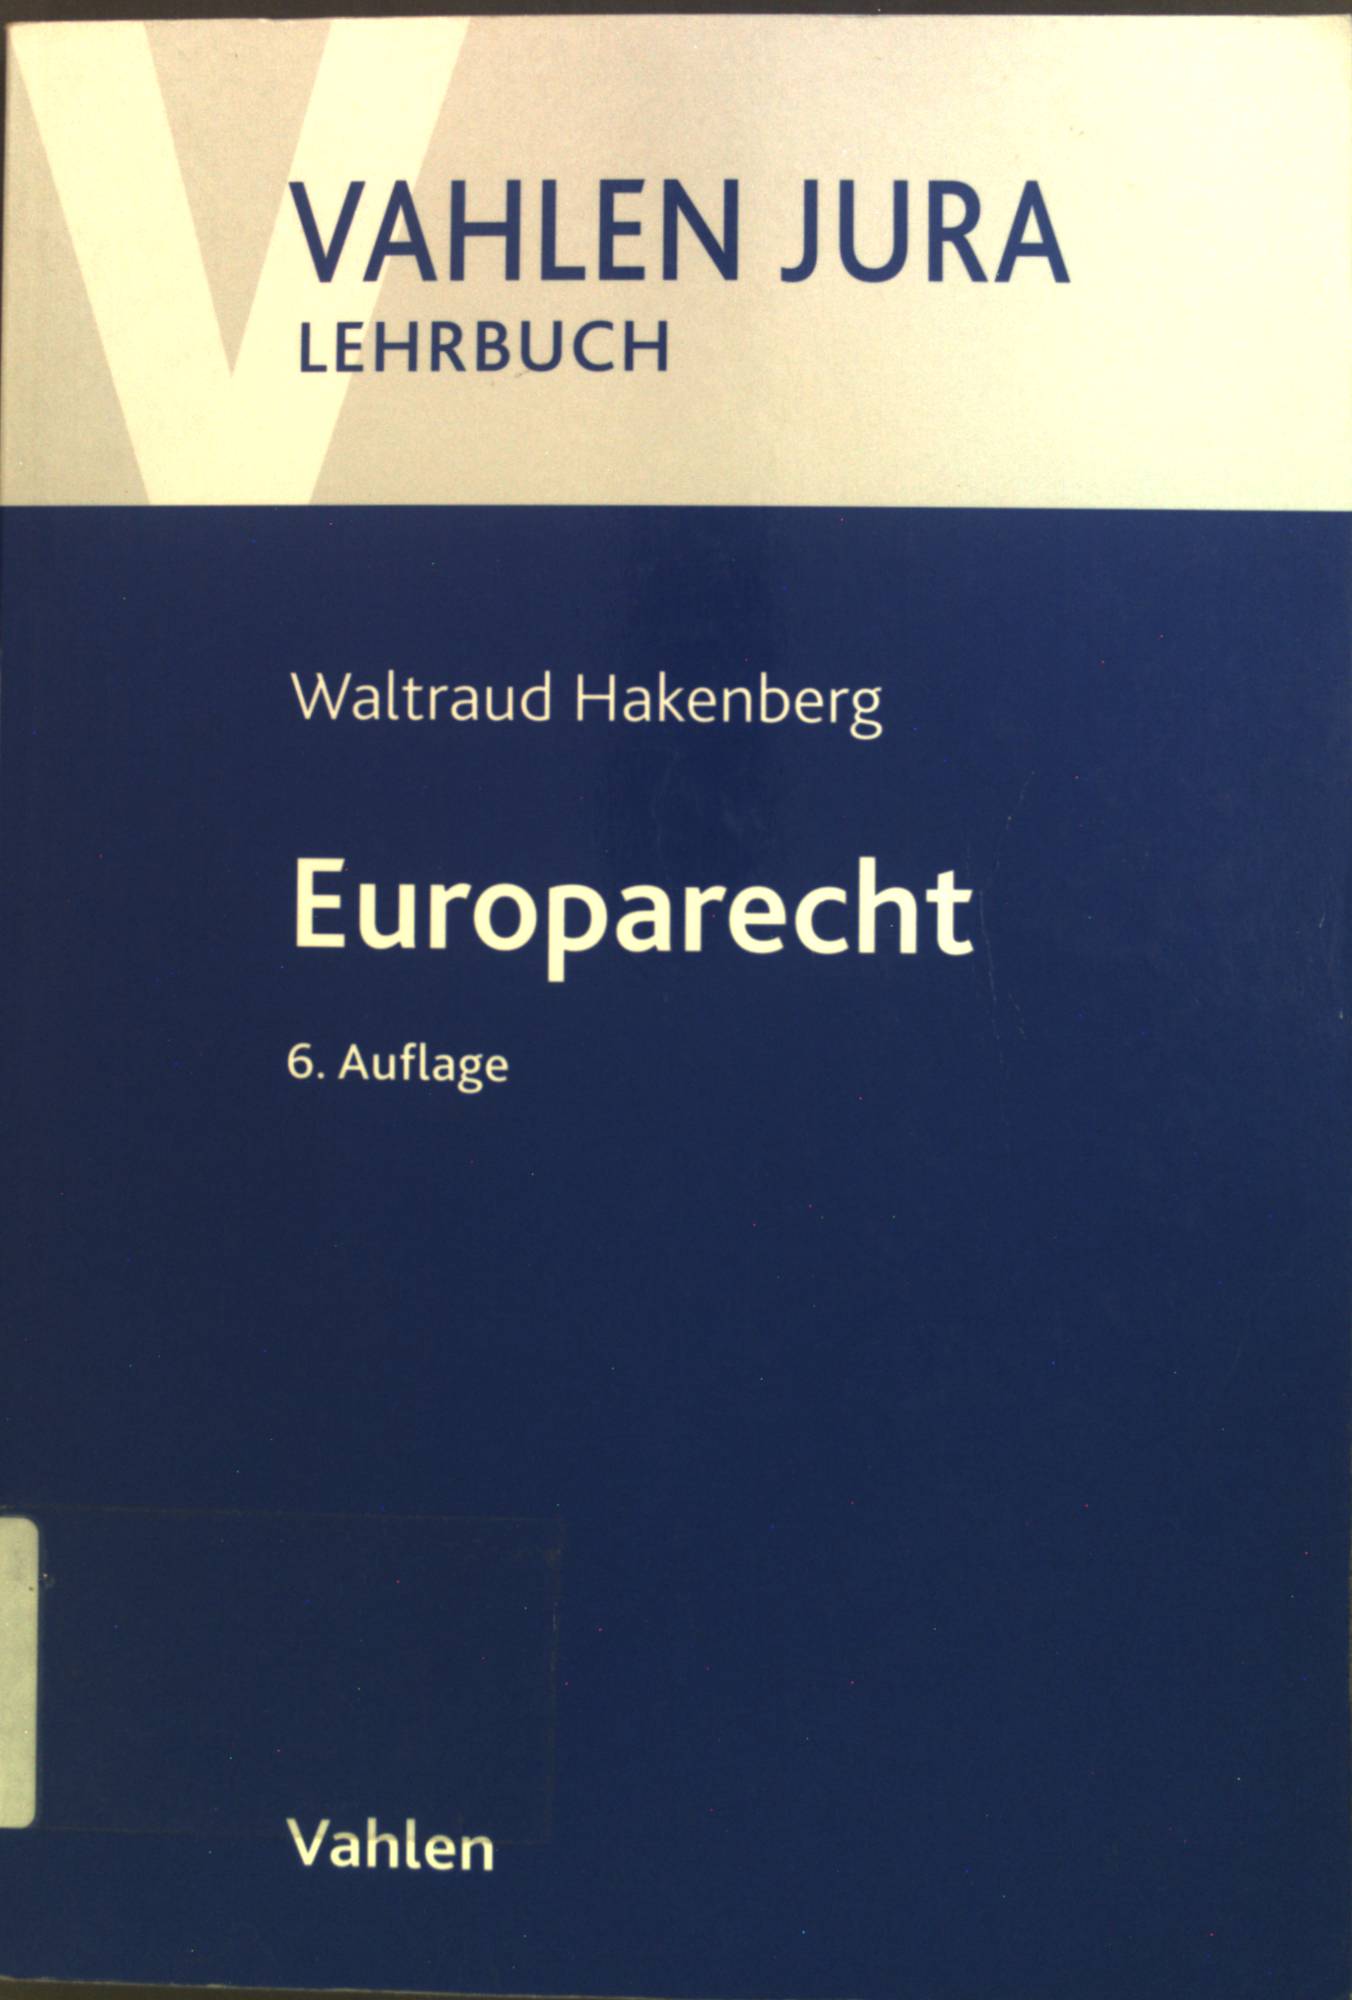 Europarecht. Vahlen Jura : Lehrbuch - Hakenberg, Waltraud